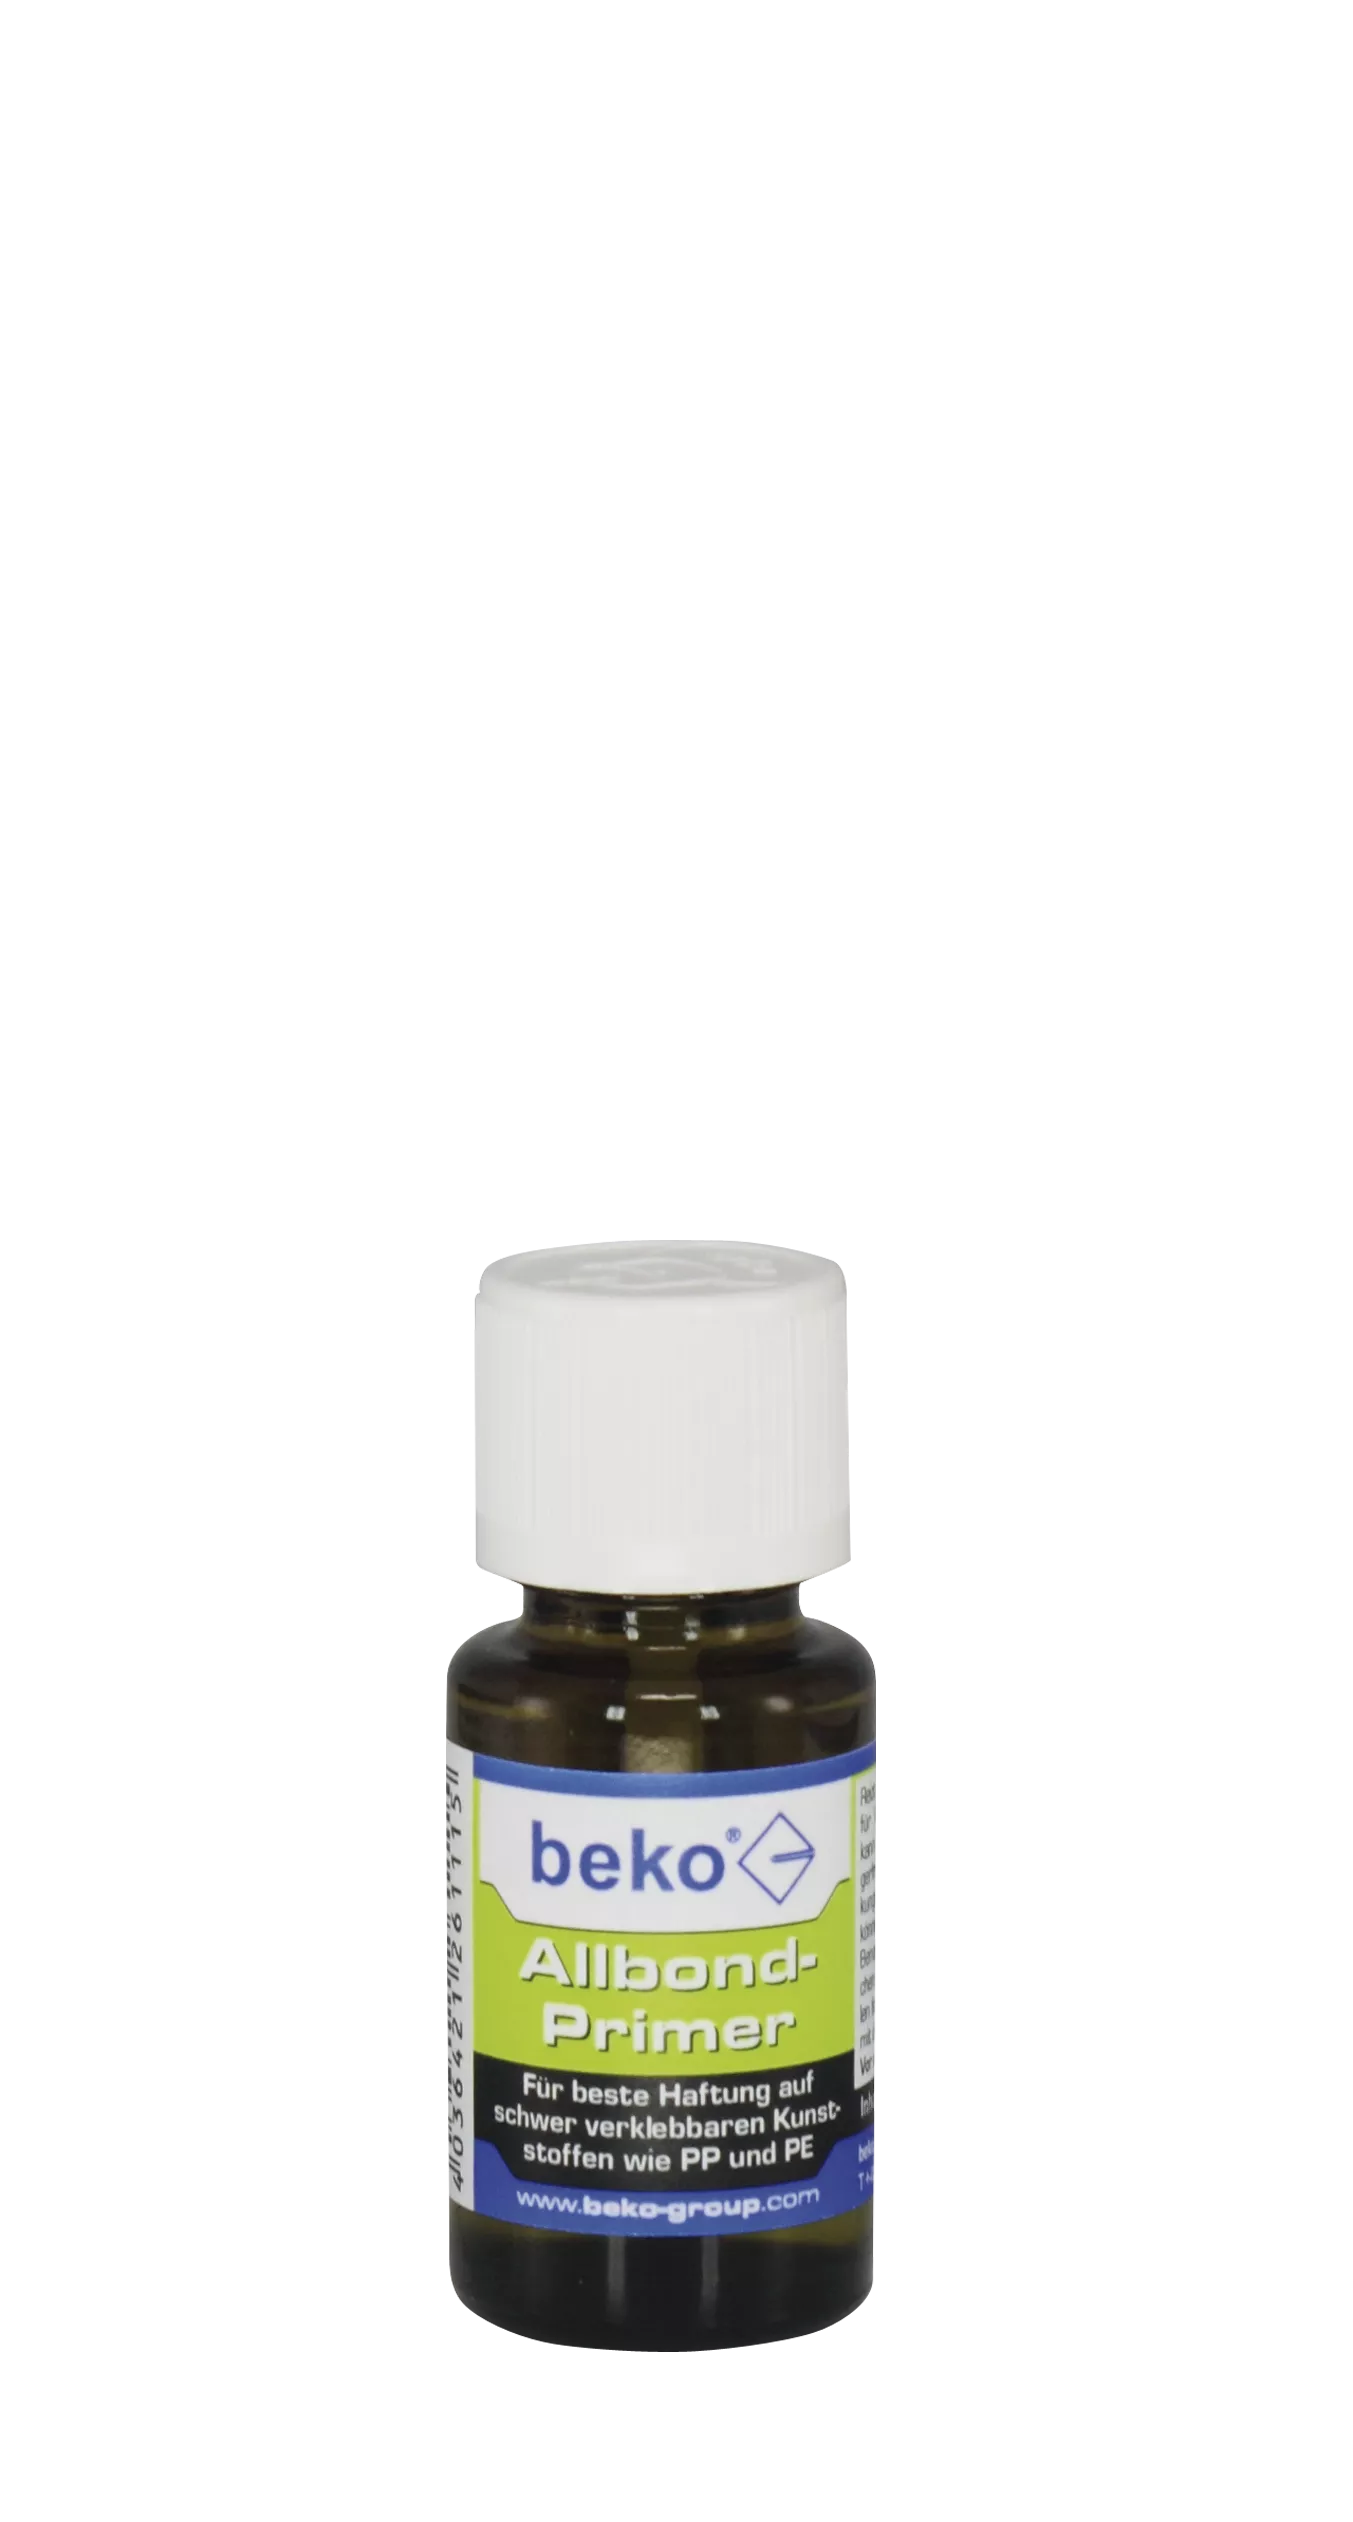 beko Allbond-Primer 15 ml Pinselflasche